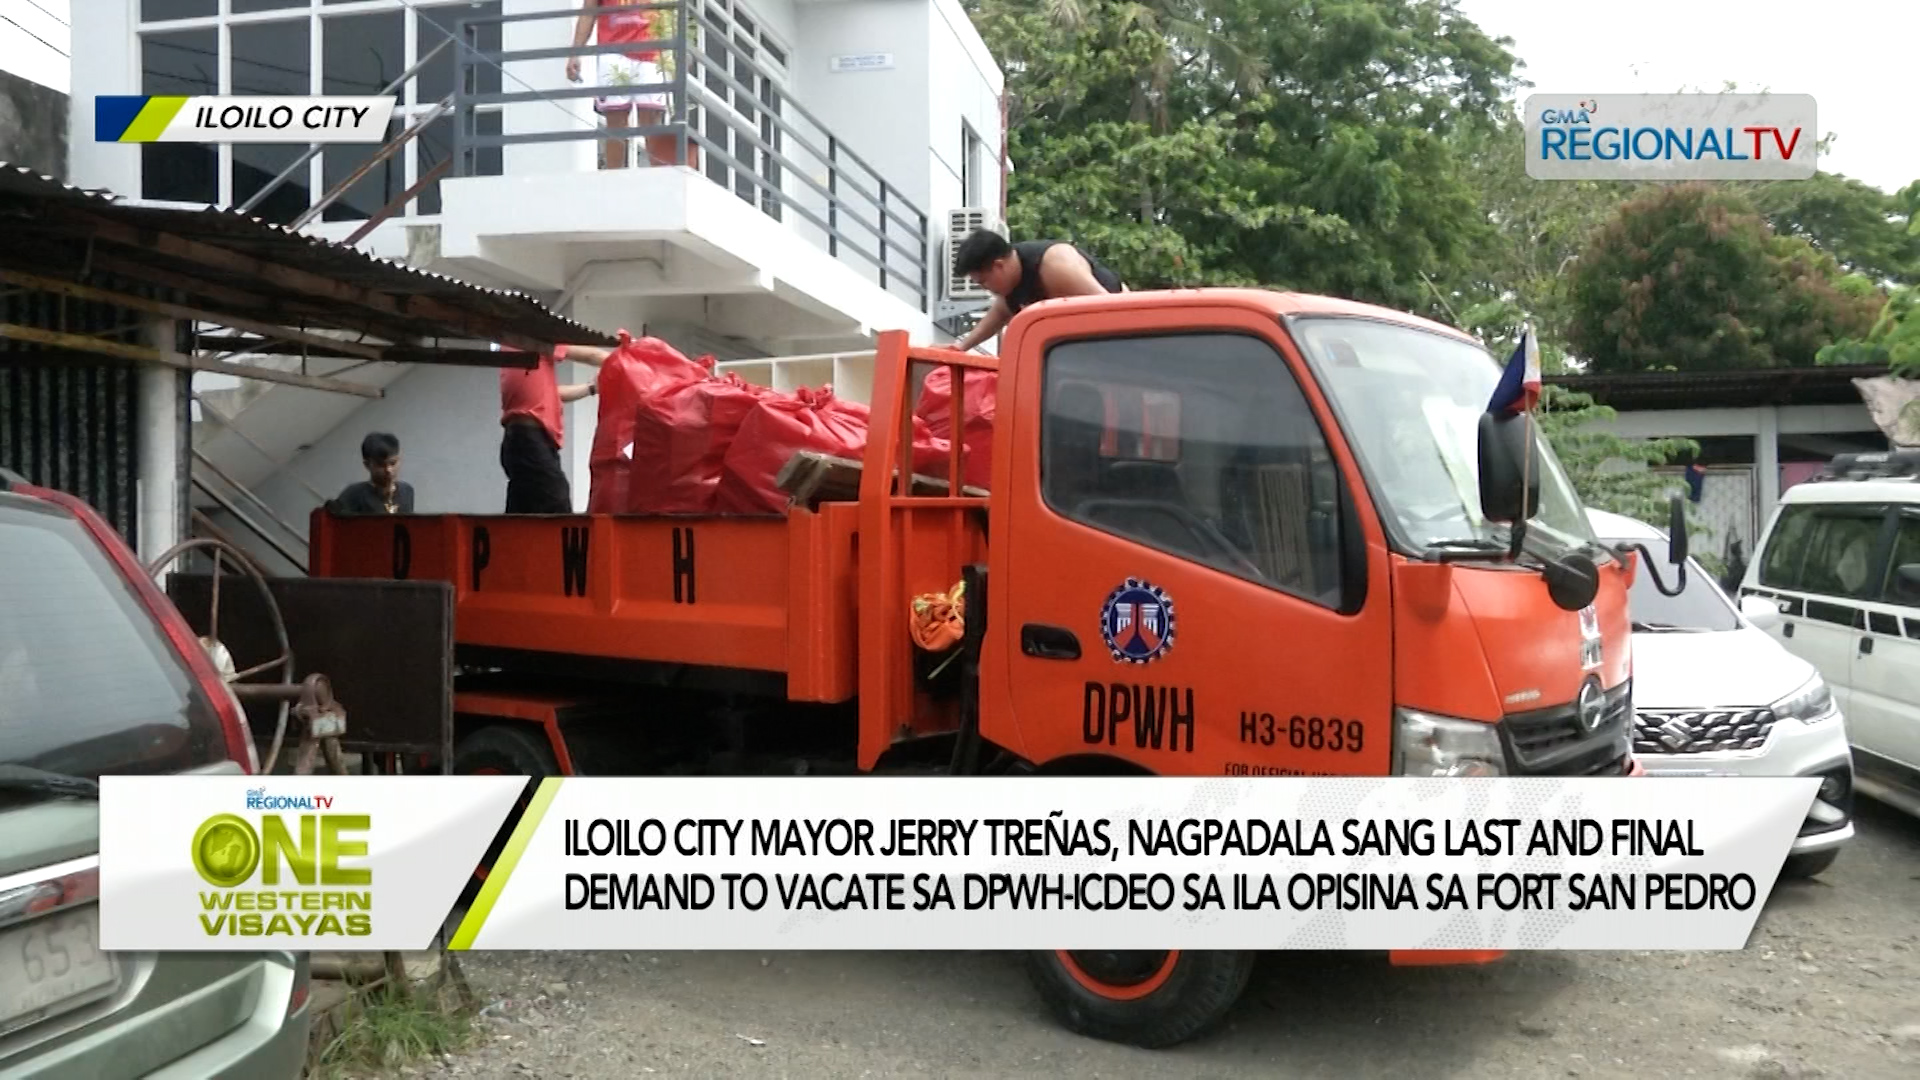 Mayor Treñas, nagpadala sang last and final demand to vacate sa DPWH-ICDEO